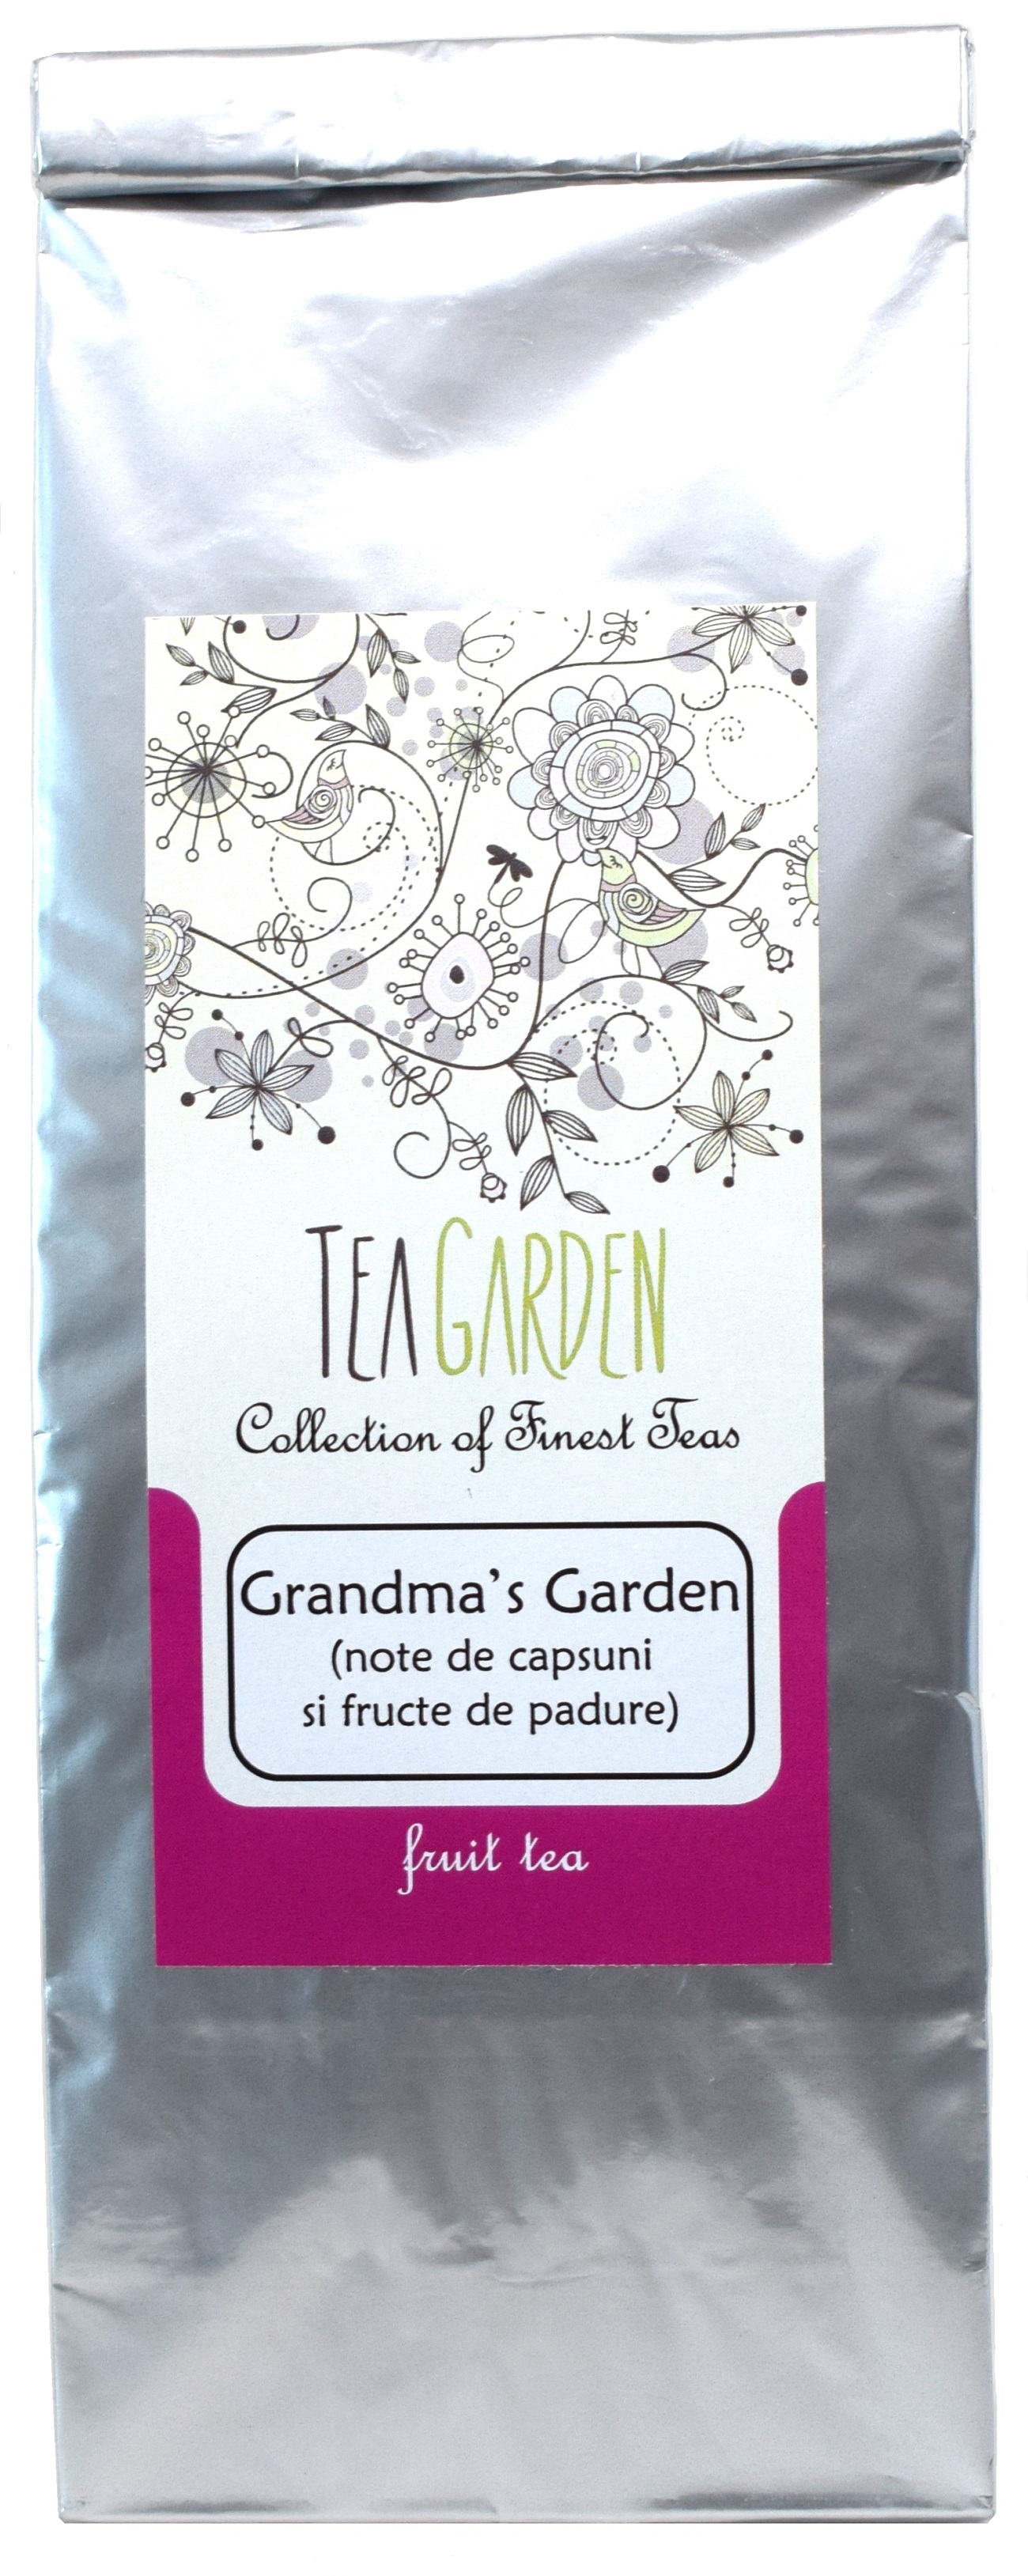 Ceai Grandma's Garden 100 gr - Tea Garden